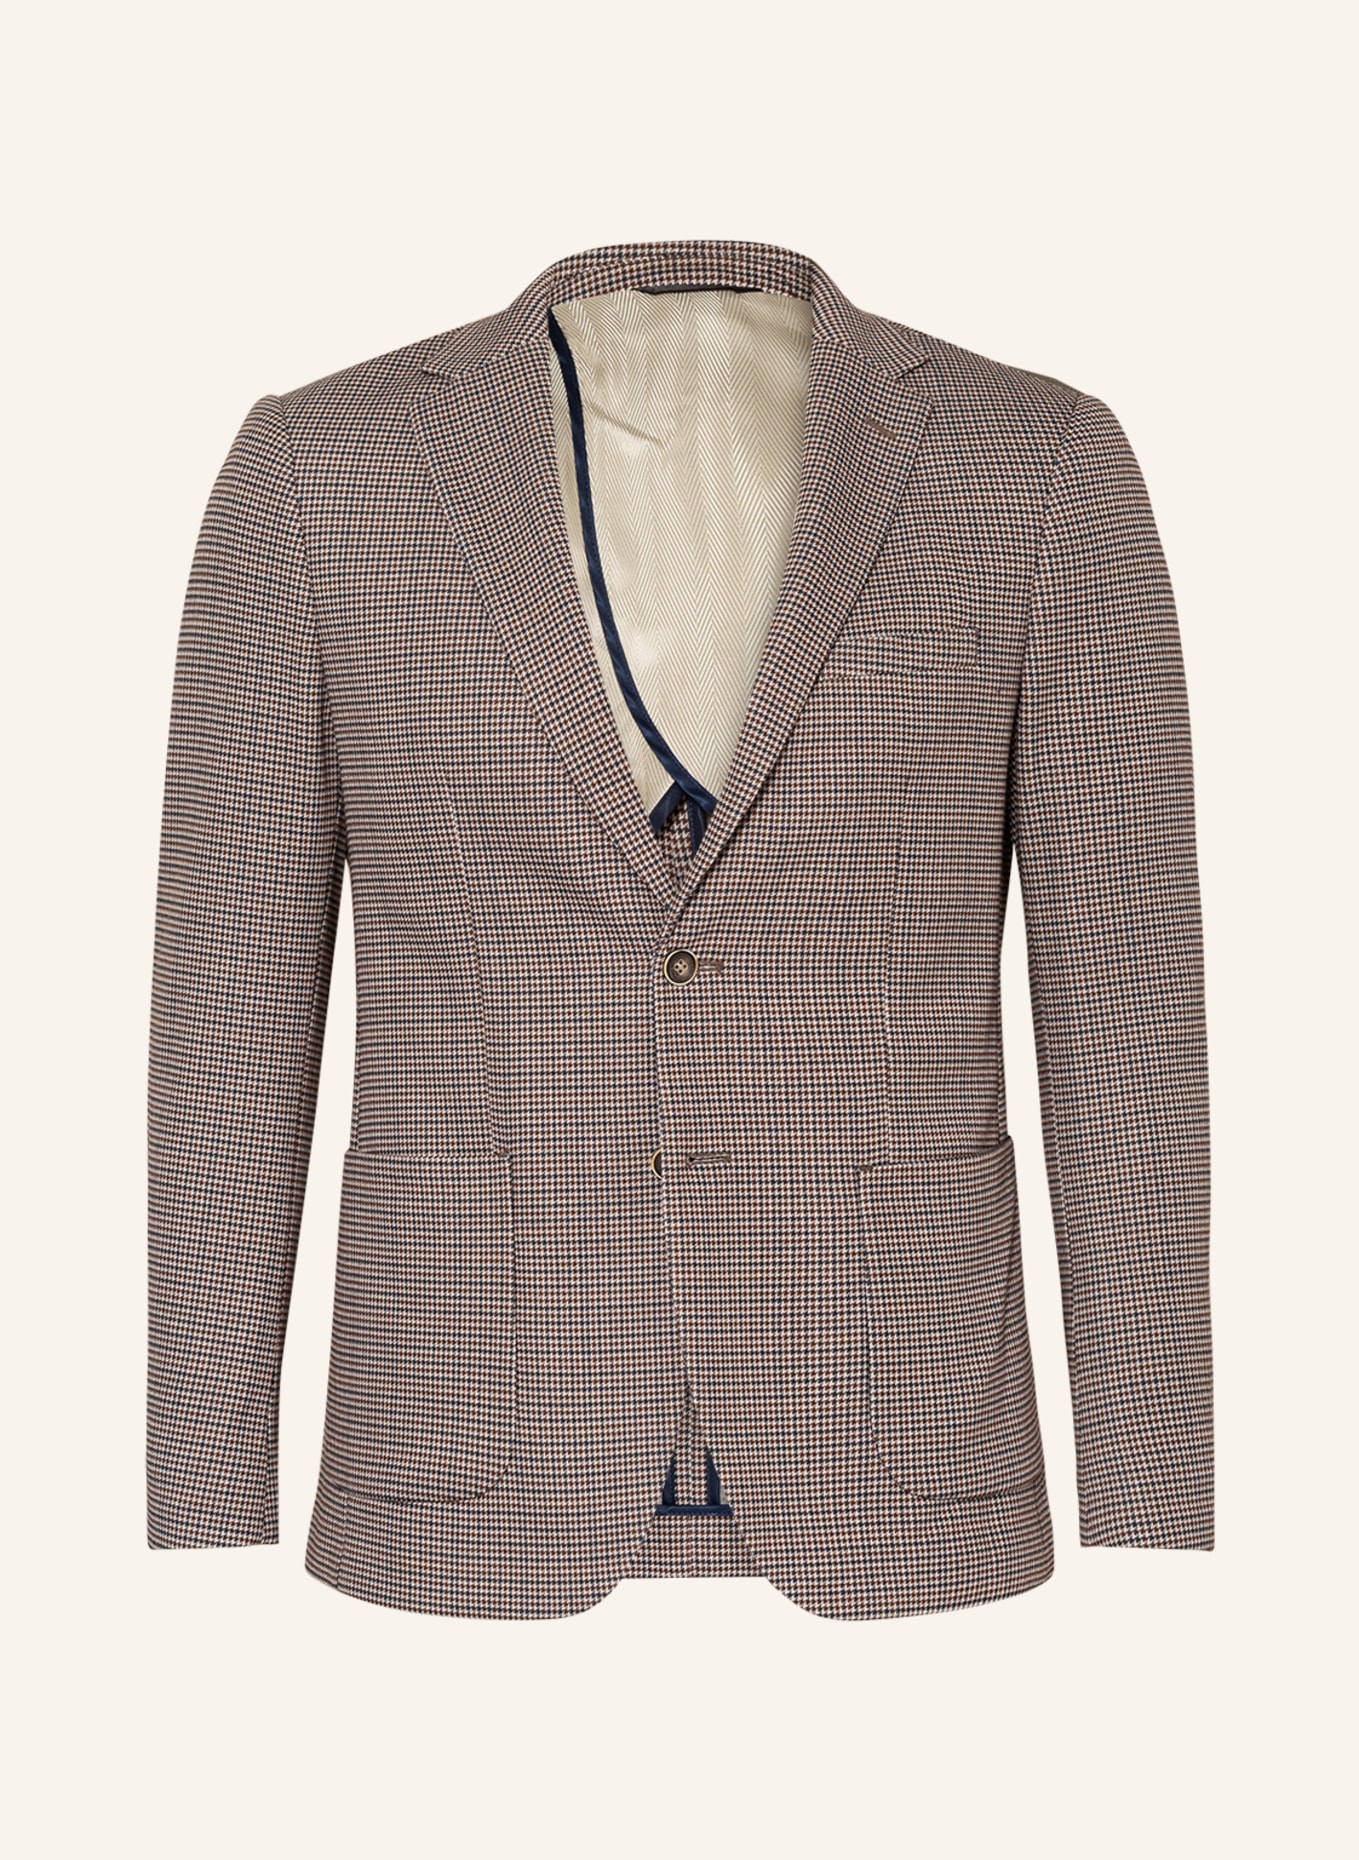 PAUL Suit jacket Slim Fit, Color: 360 Beige Tricol (Image 1)